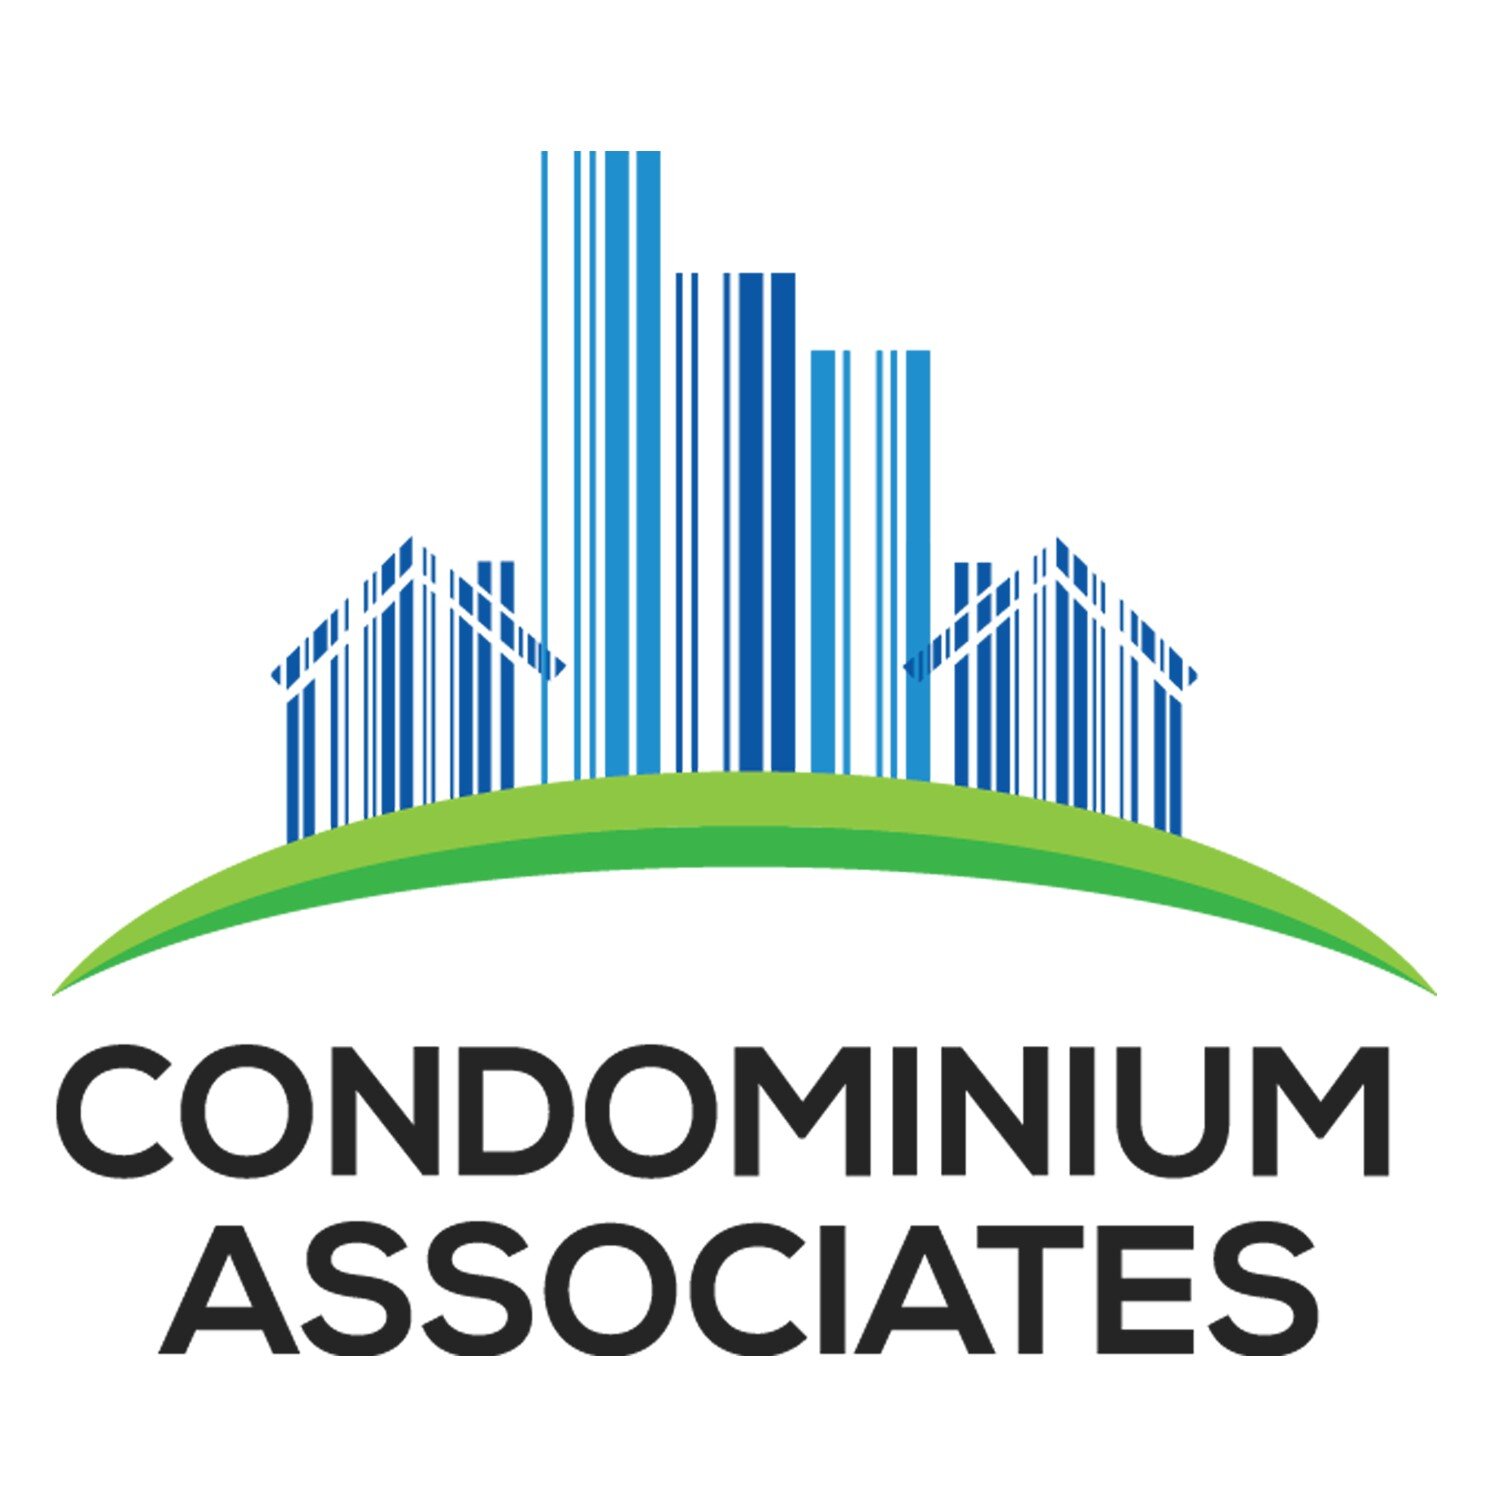 Condominium Associates